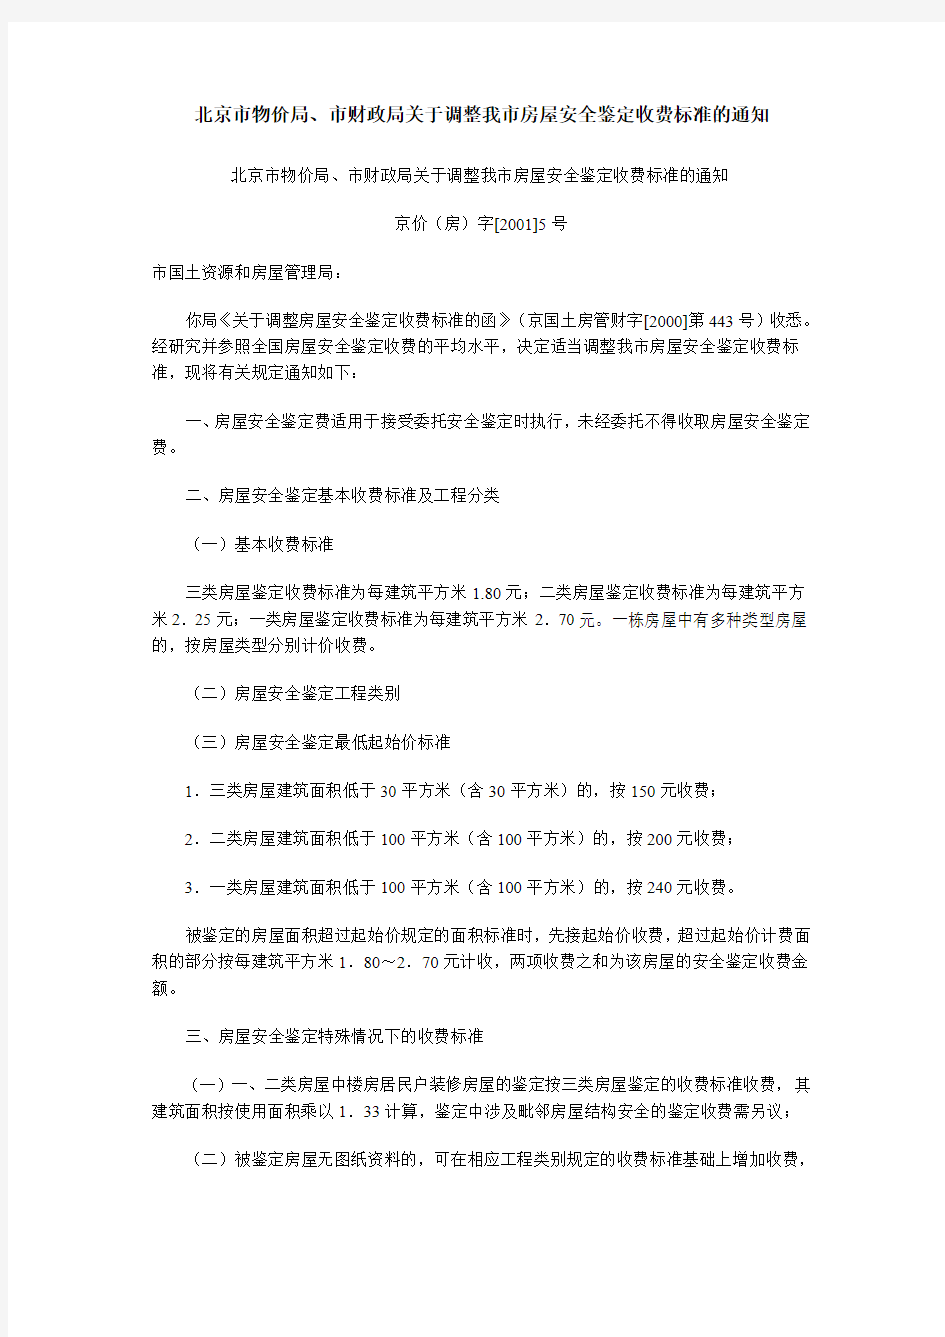 北京市物价局房屋安全鉴定的收费标准